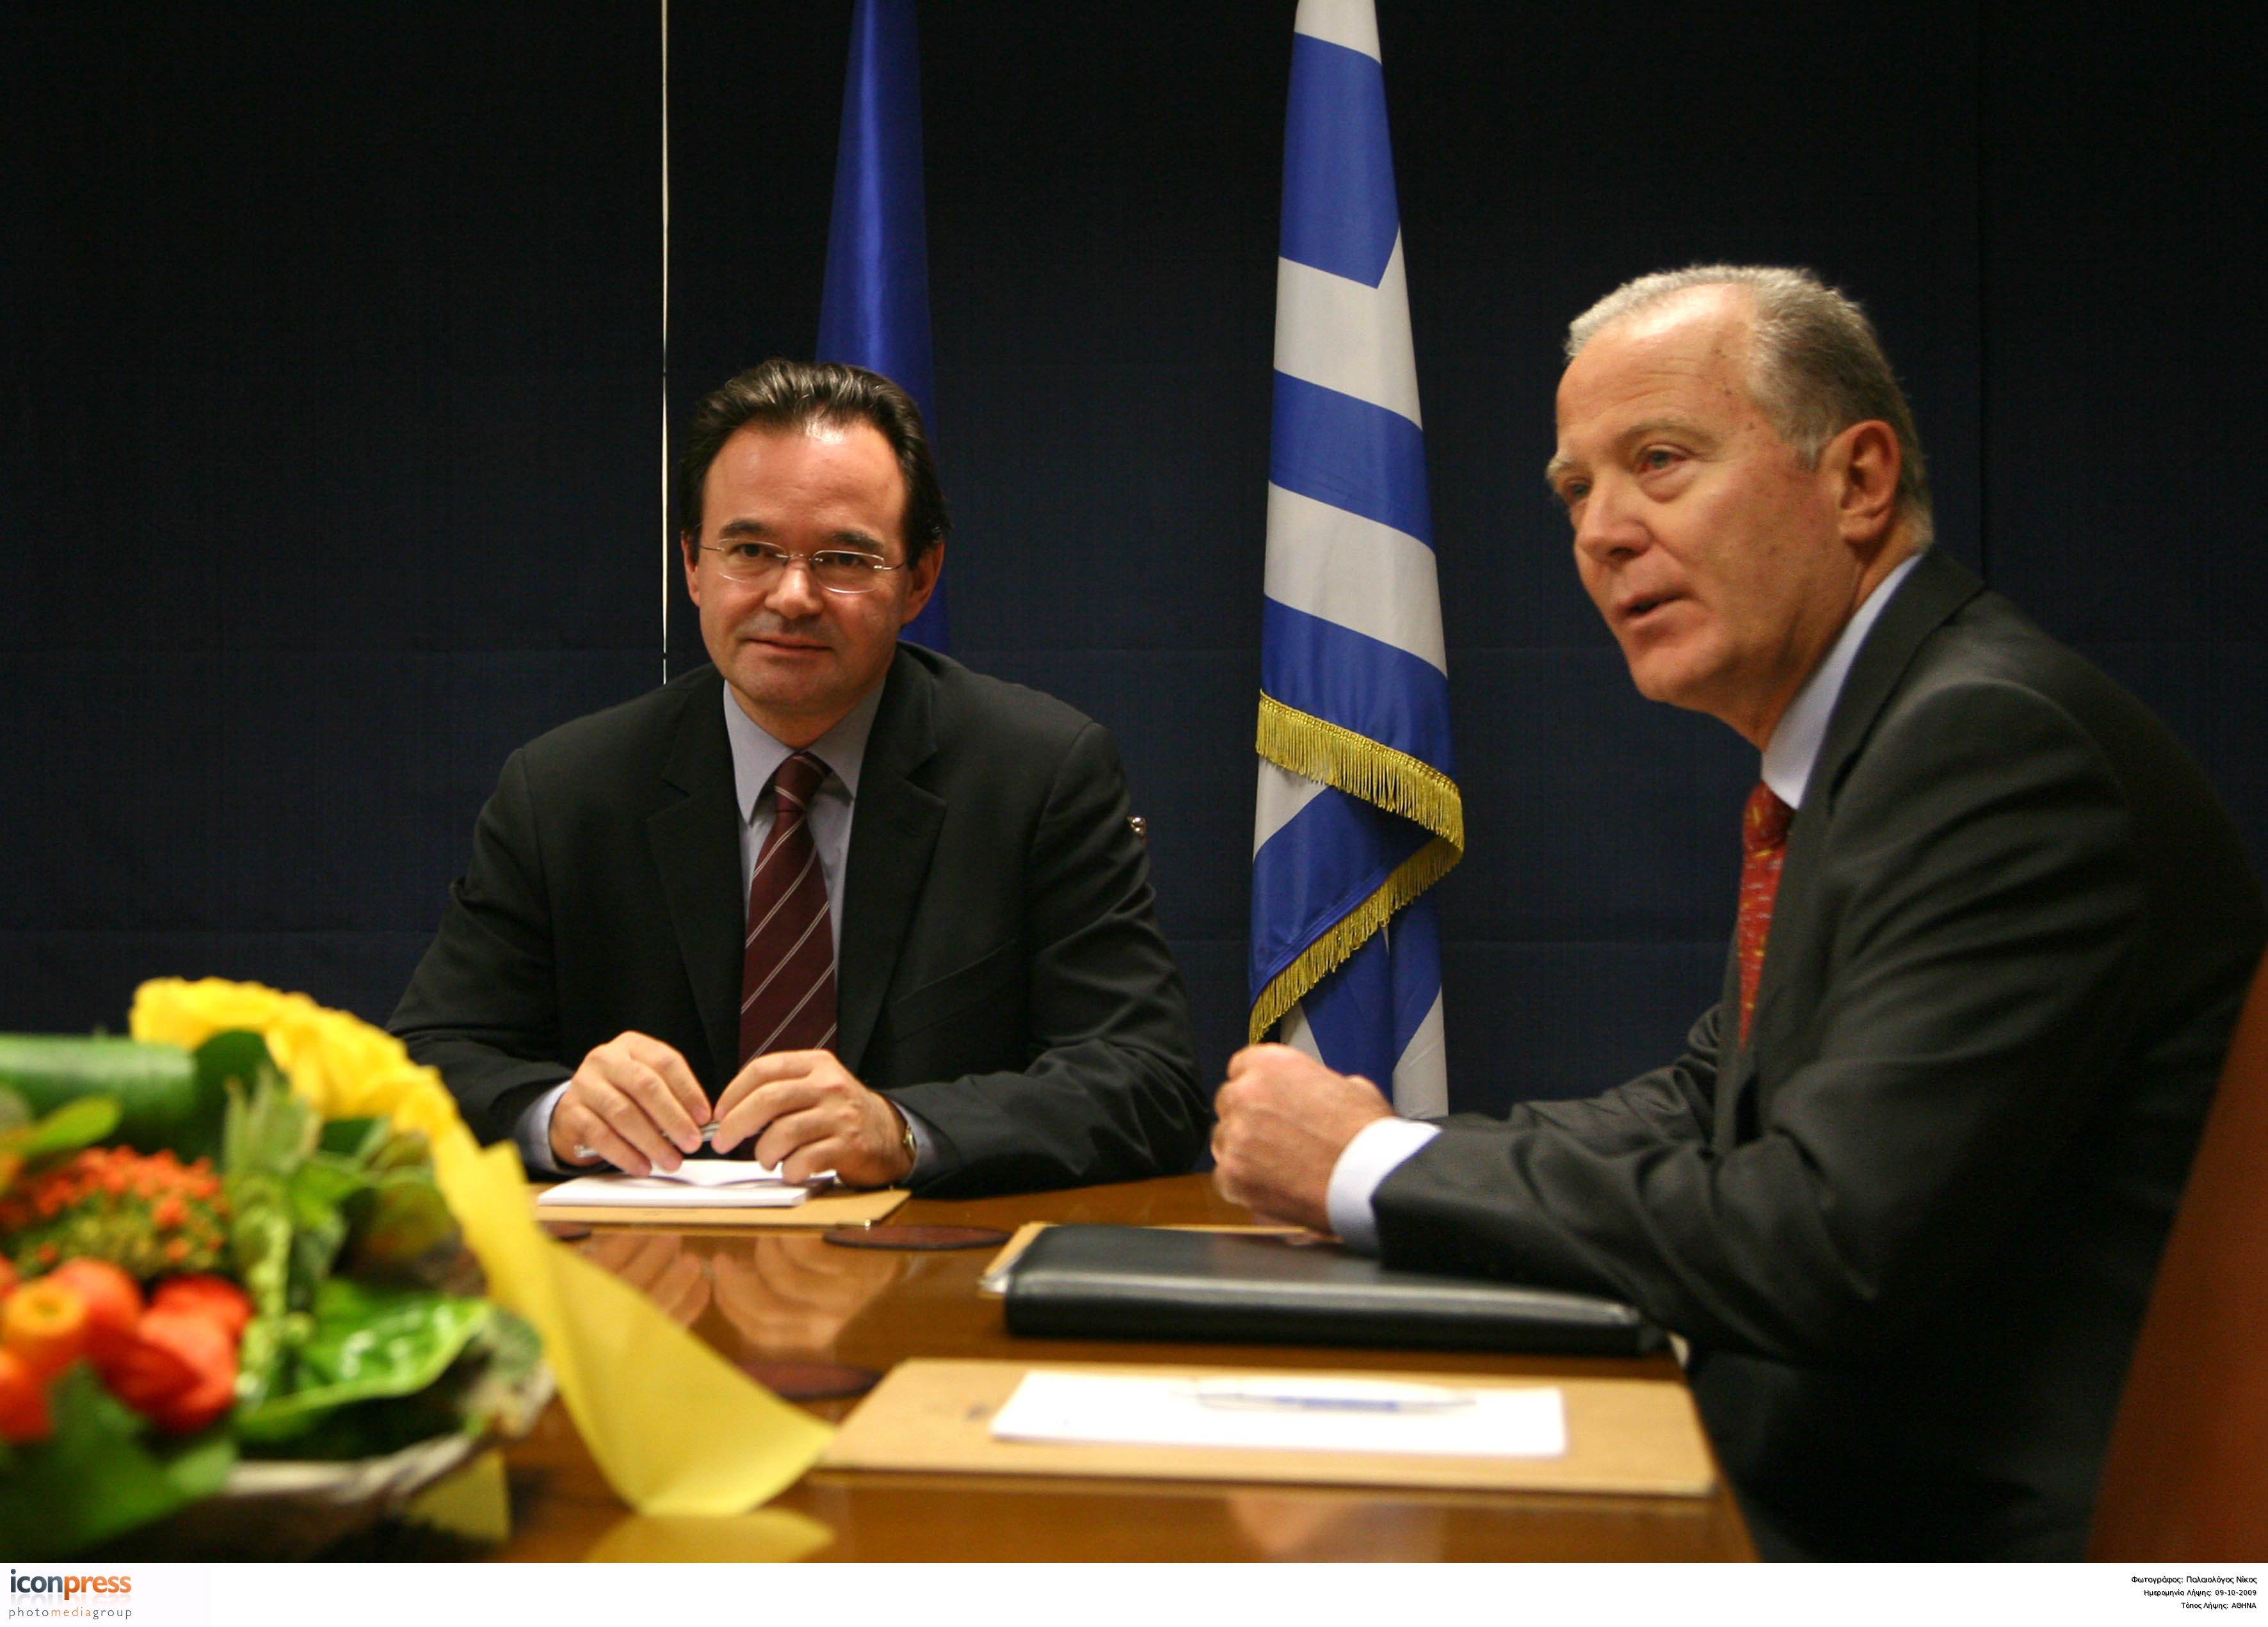 Πρόταση για μίνι μνημόνιο χωρίς ΔΝΤ δέχθηκε η Ελλάδα το 2009;